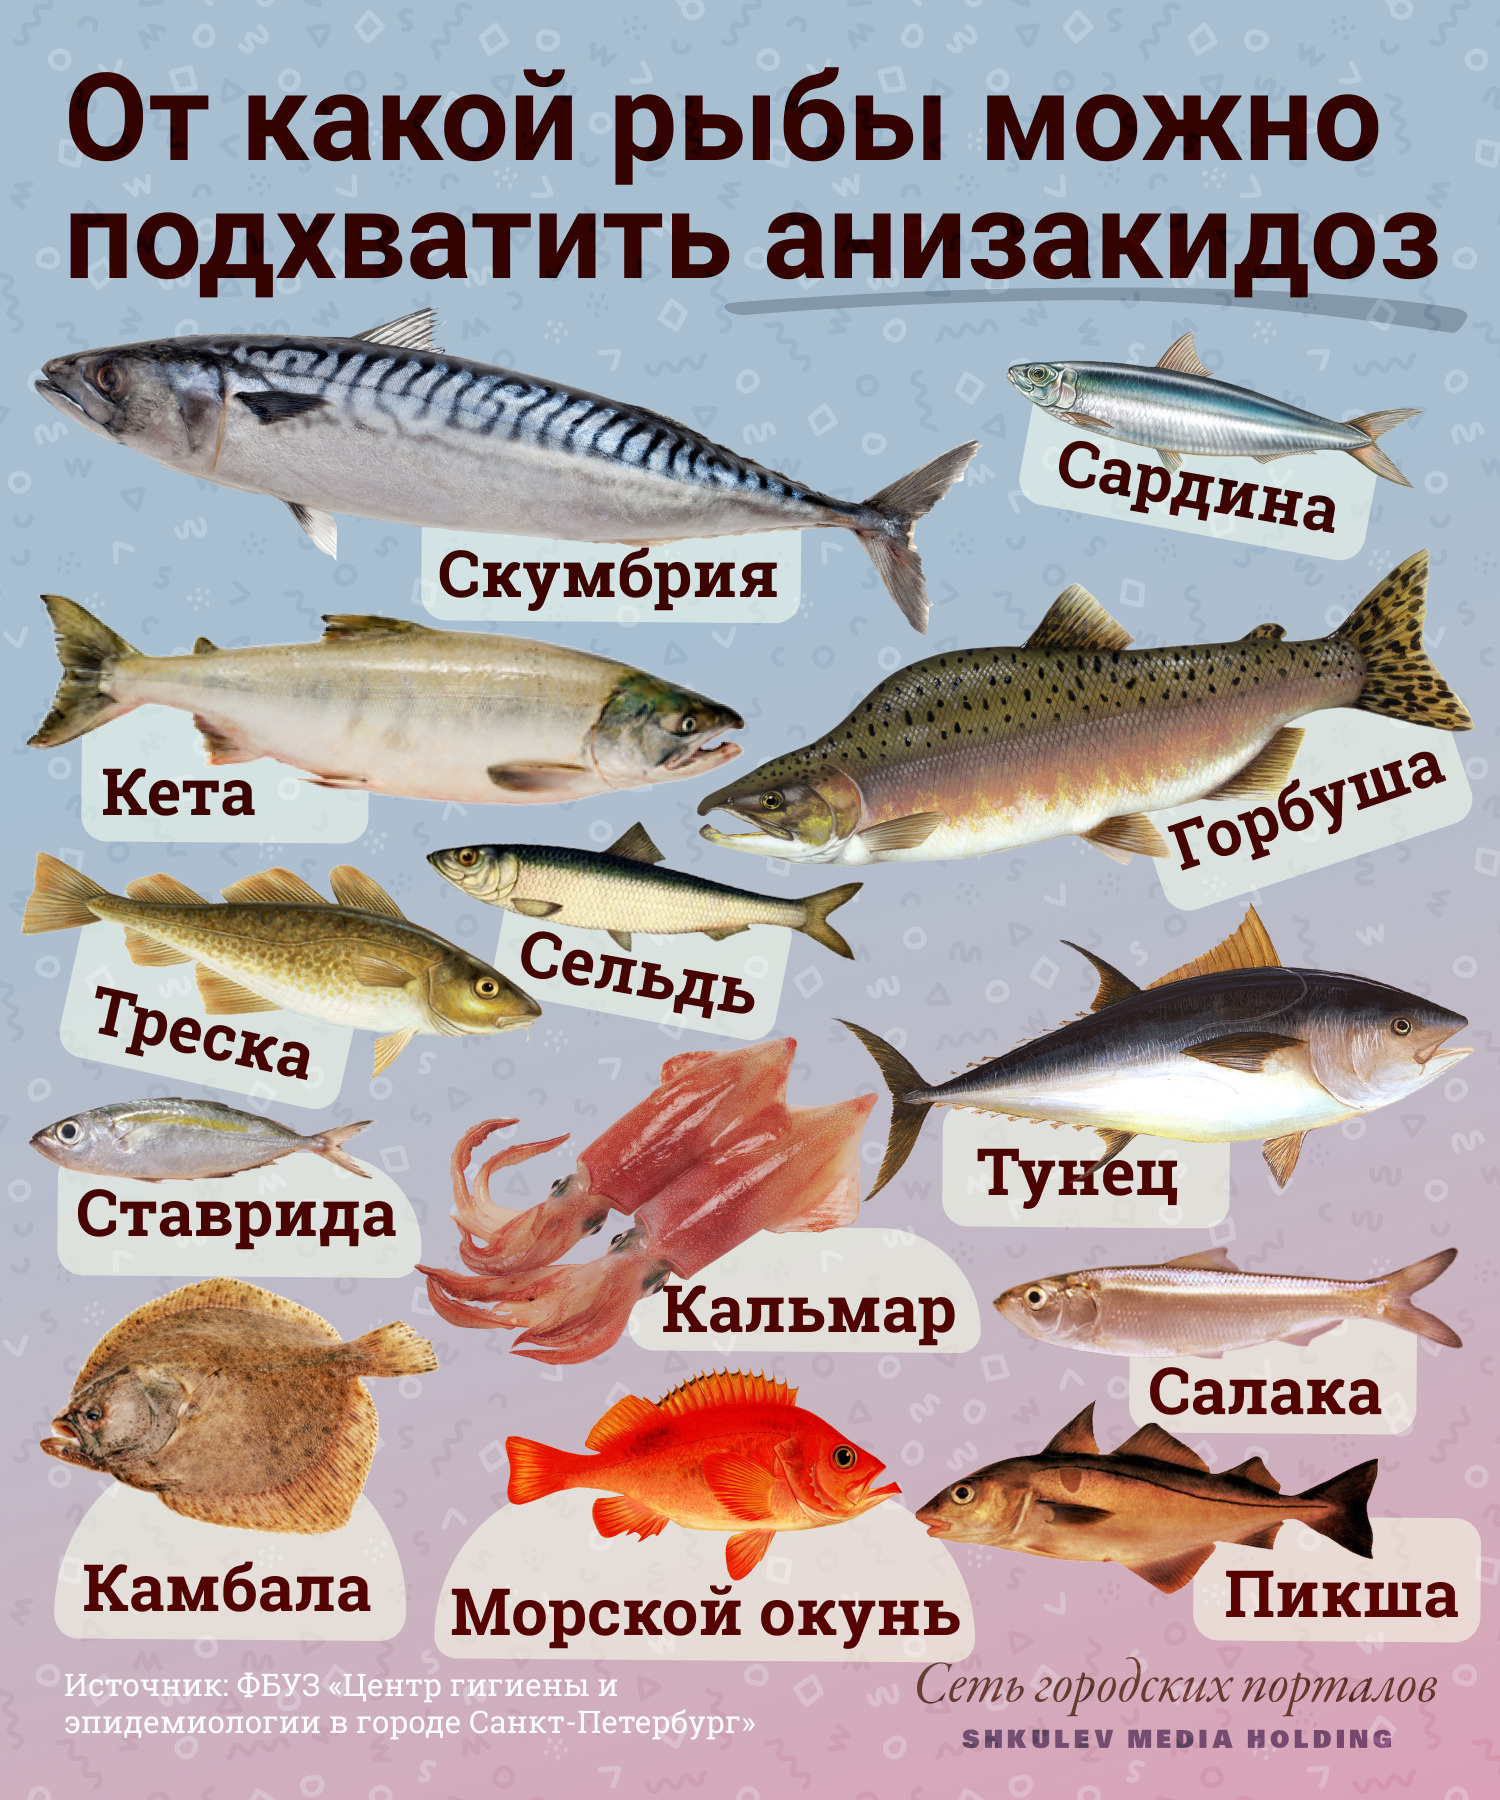 Интересные факты о кете: морская или речная рыба?